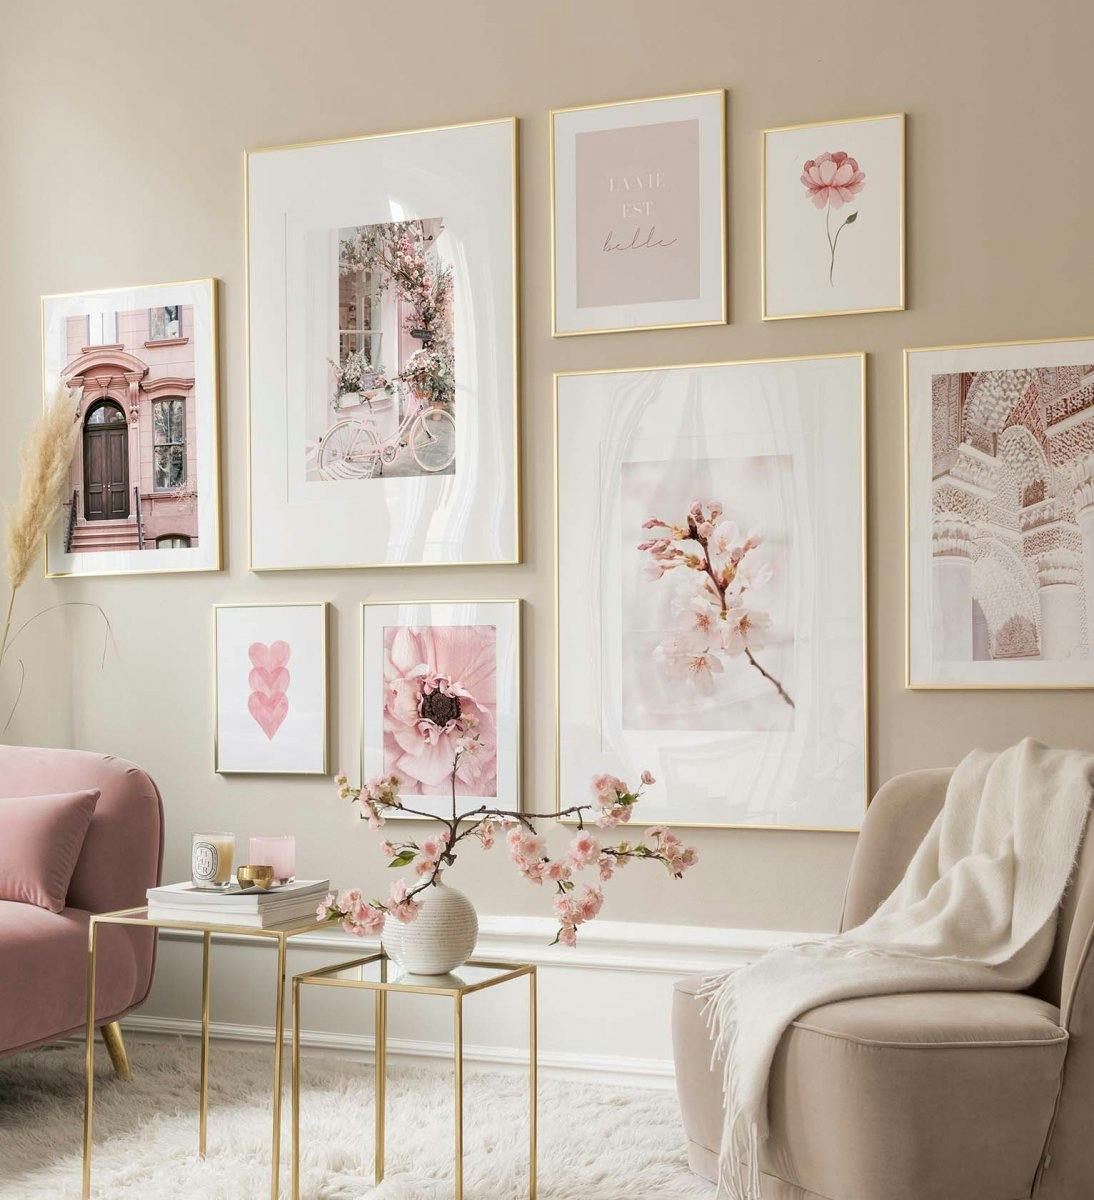 リビングルームや寝室におすすめのピンクのウォールアートや写真